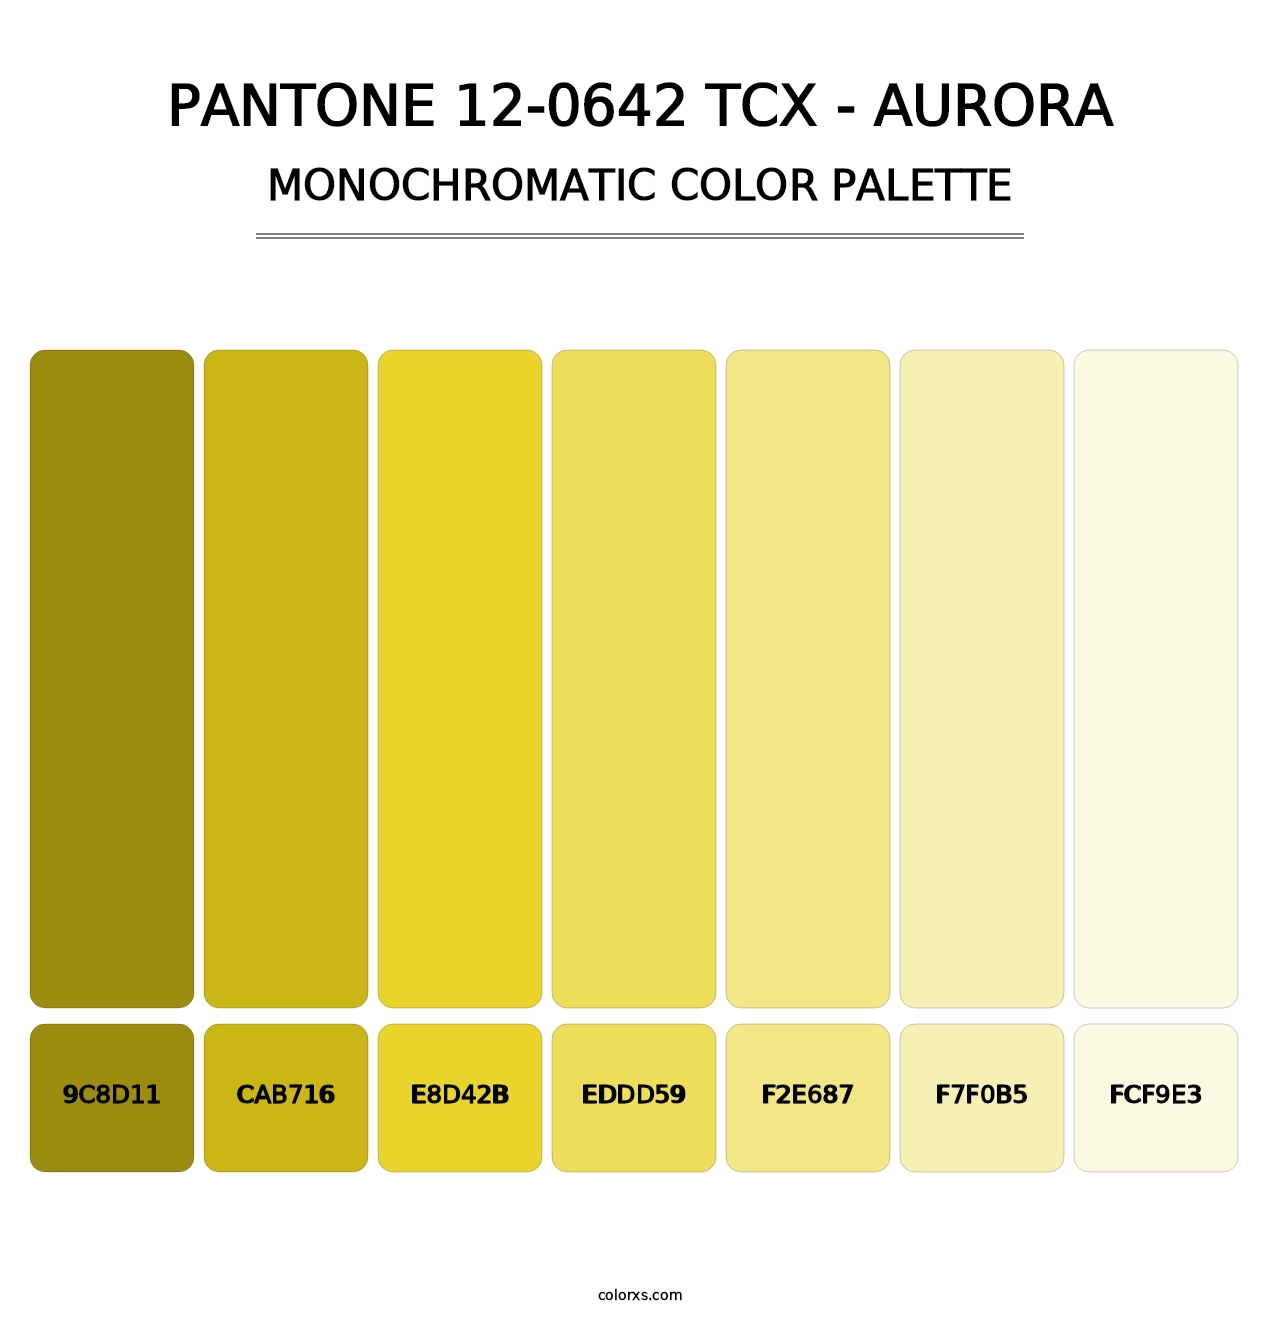 PANTONE 12-0642 TCX - Aurora - Monochromatic Color Palette